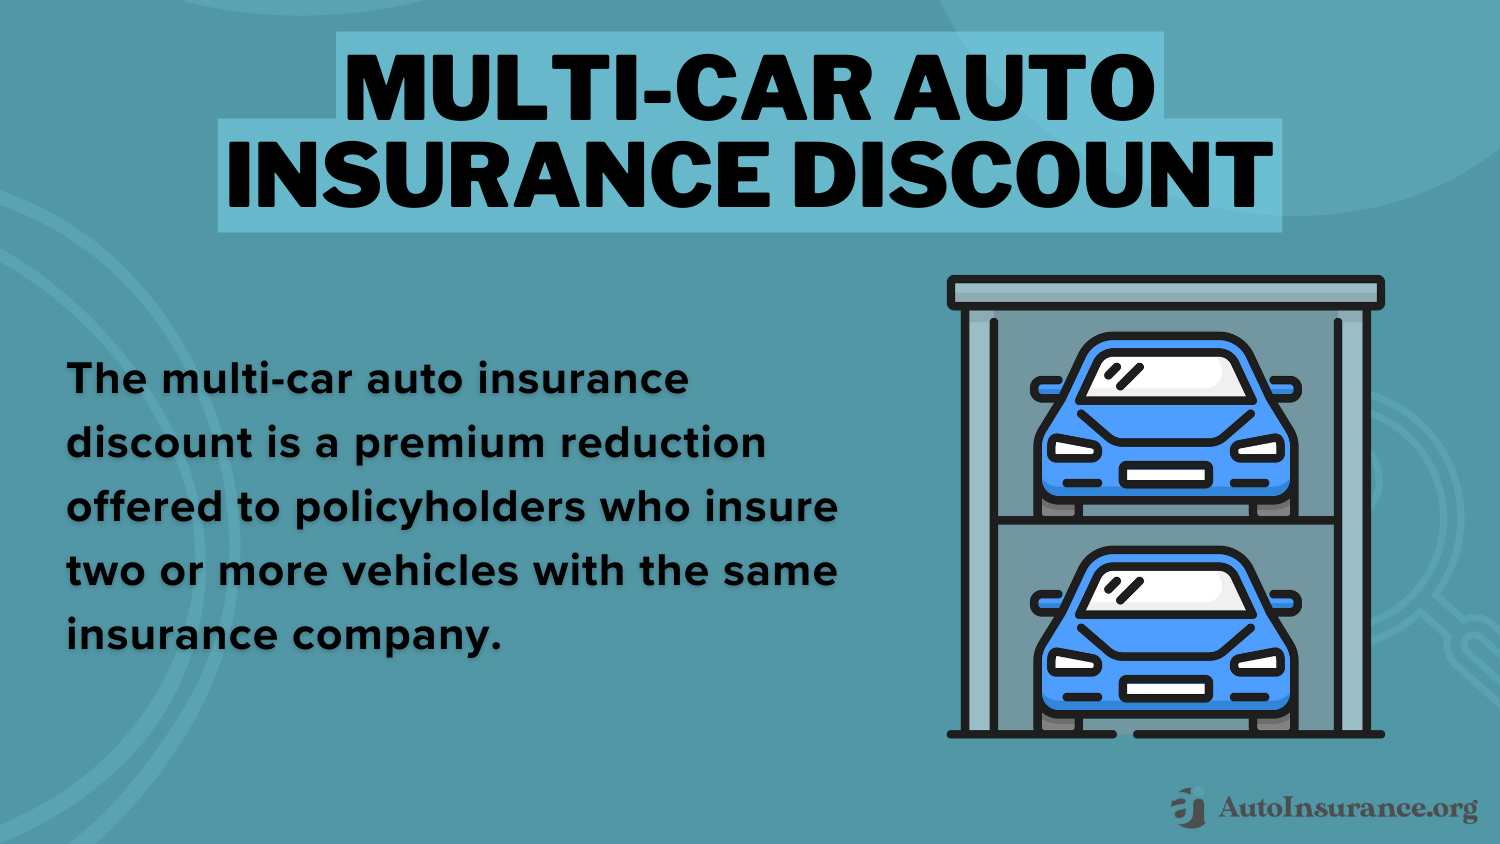 State Farm Auto Insurance Discounts: Multi-Car Auto Insurance Discount Definition Card